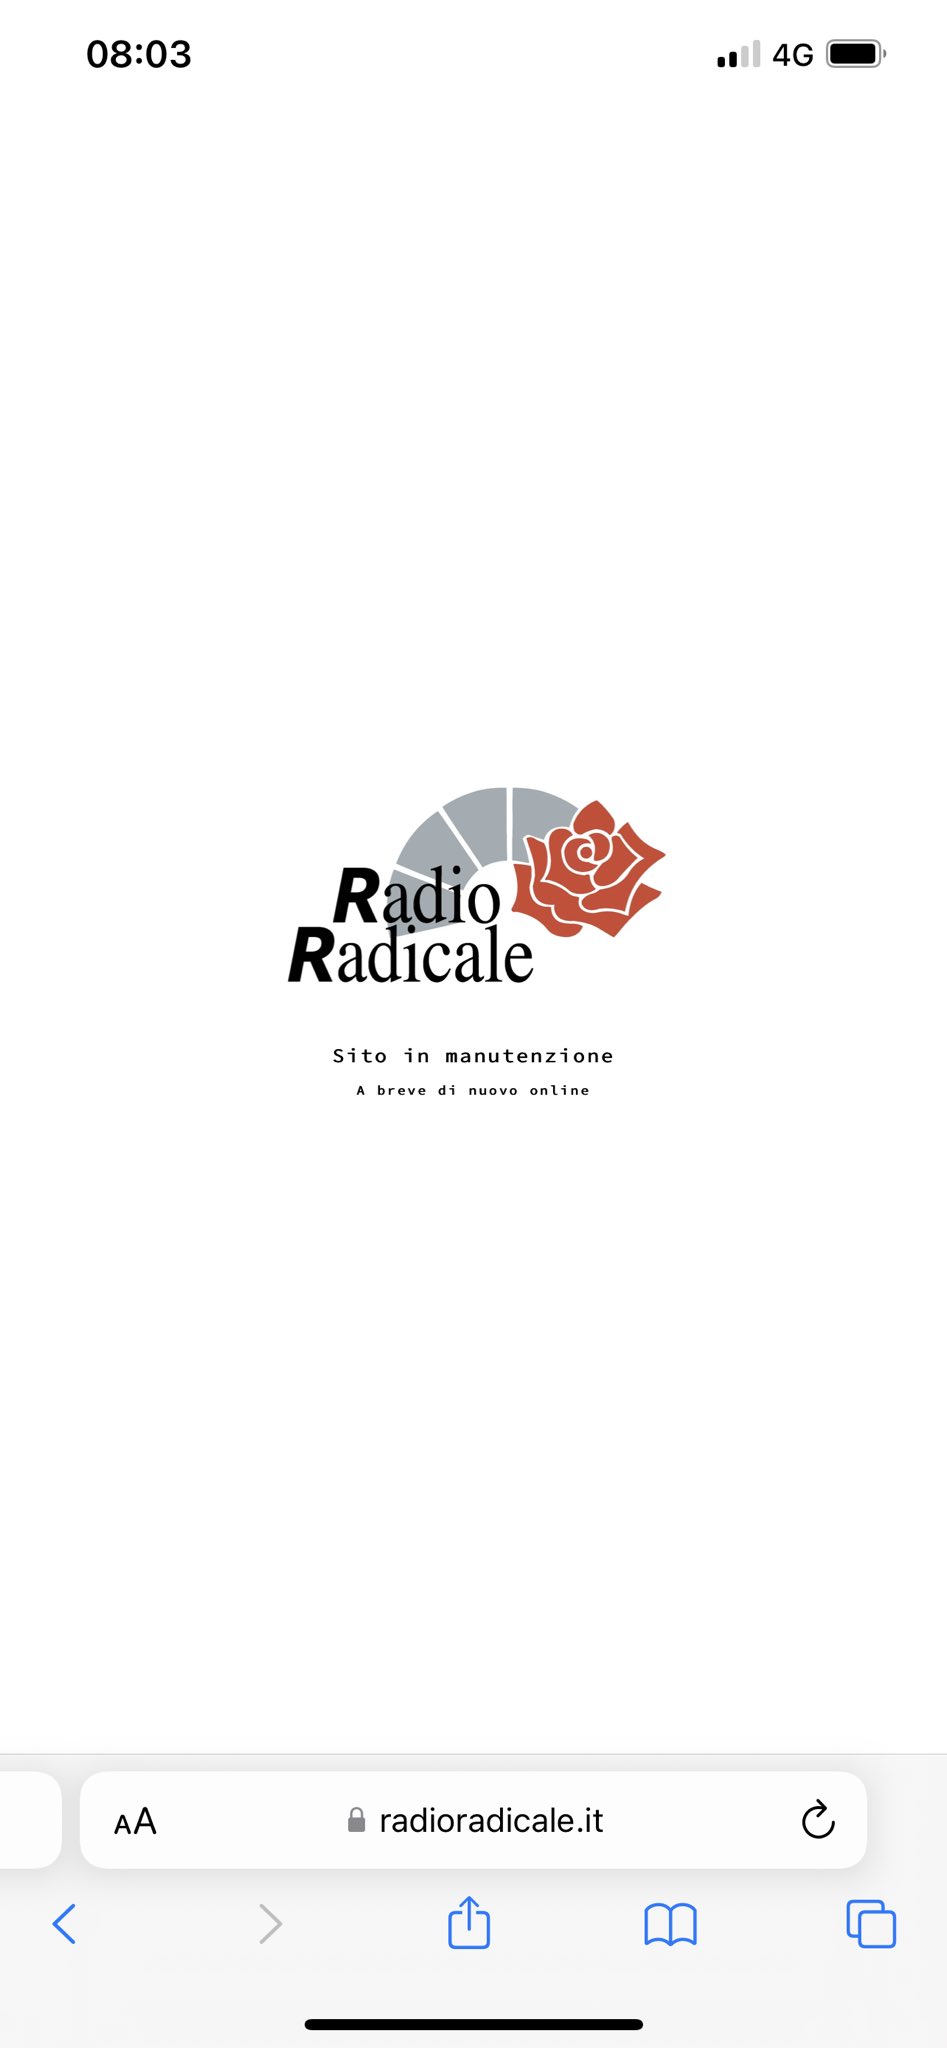 Radio Radicale on Twitter: "Siamo in diretta con Stampa e Regime, oggi a  cura di @robba07 https://t.co/TpHDsj2v8q" / Twitter